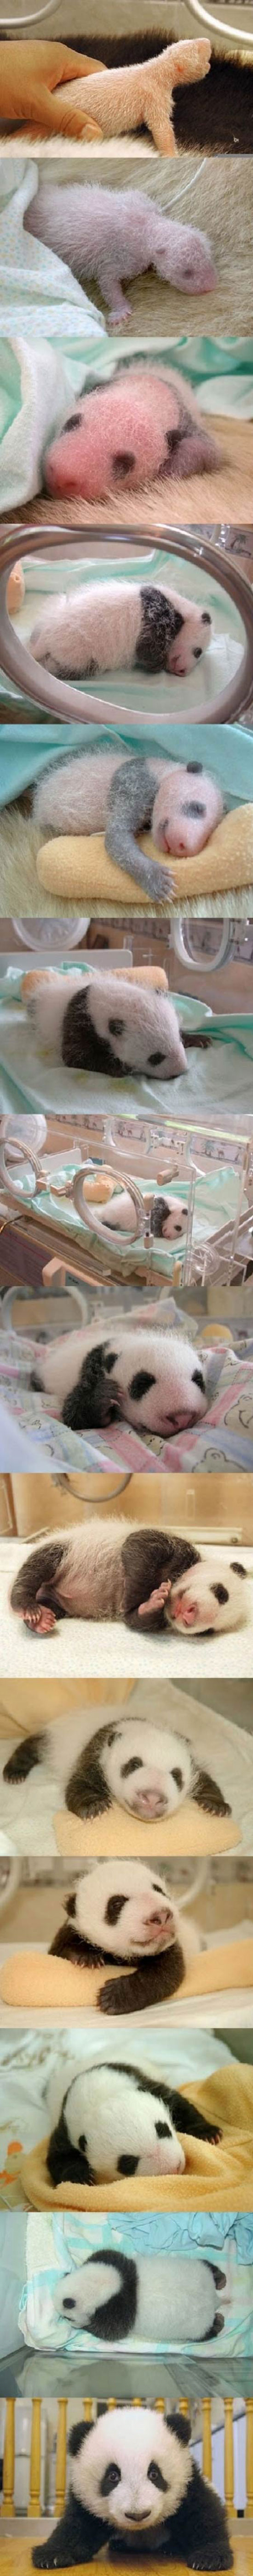 Έχετε δει νεογέννητο Panda; (3)